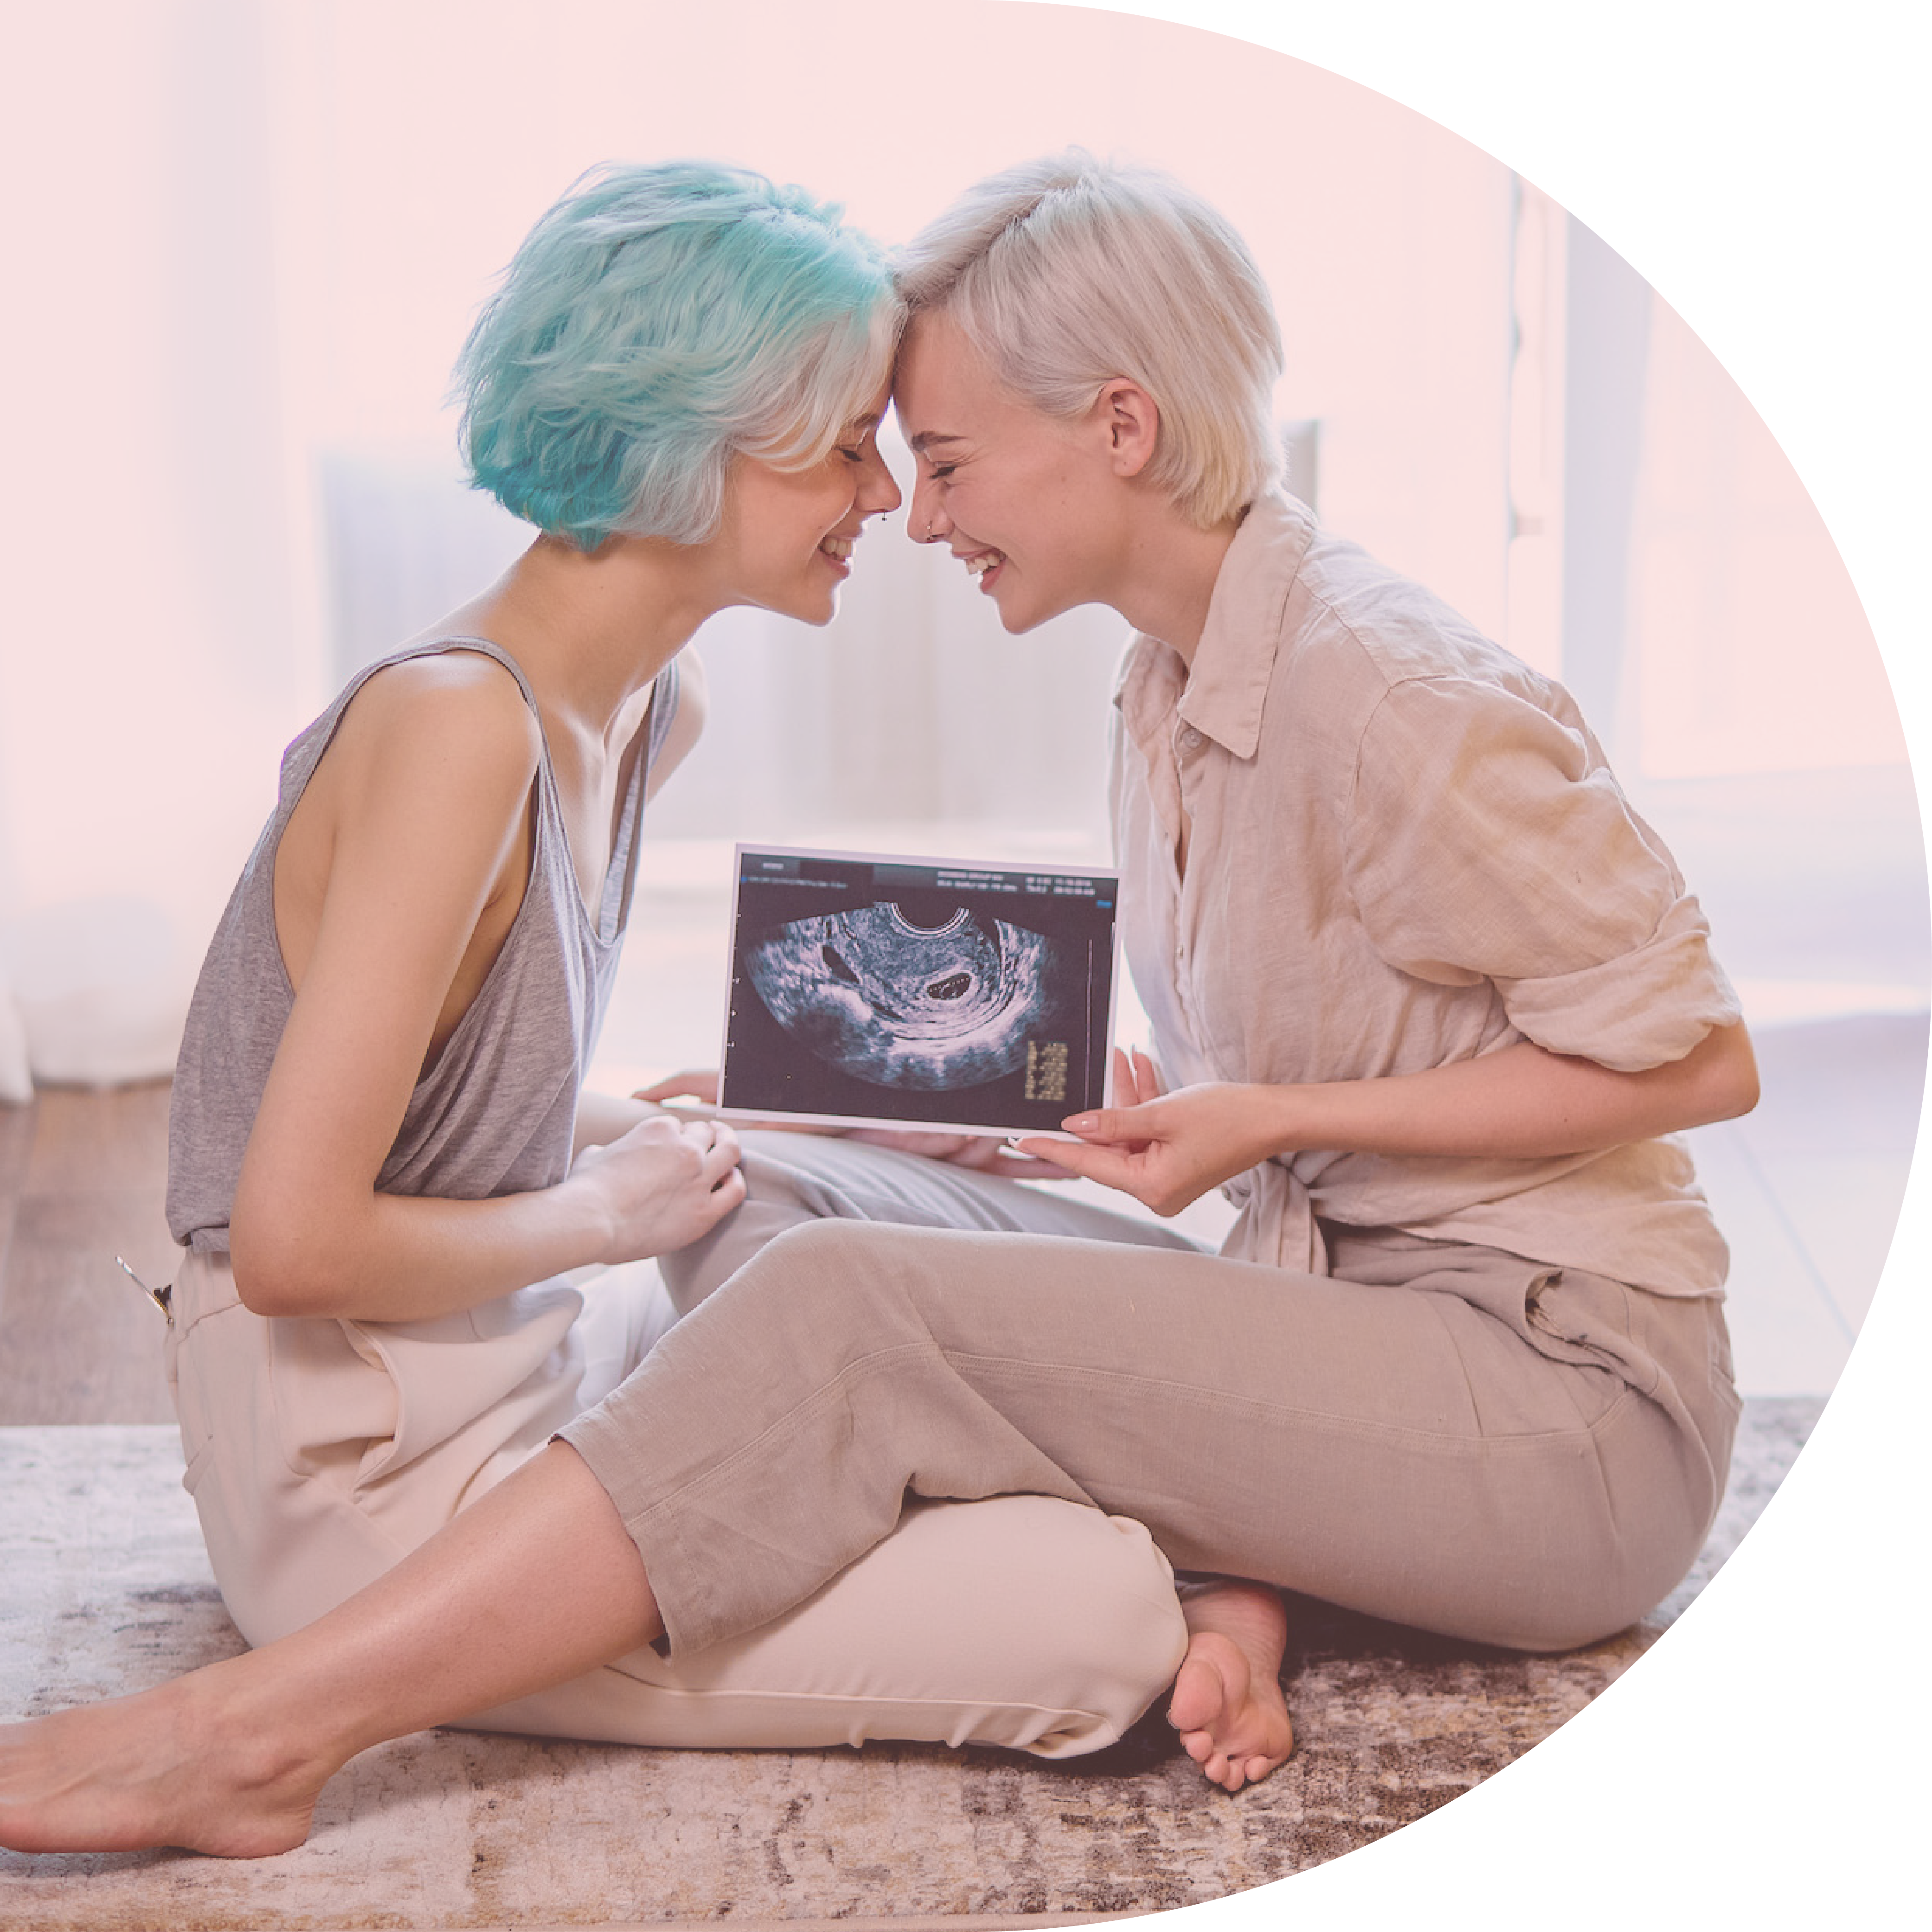 Coppia lesbica statunitense incinta grazie all'applicatore di sperma twoplus per la fertilità